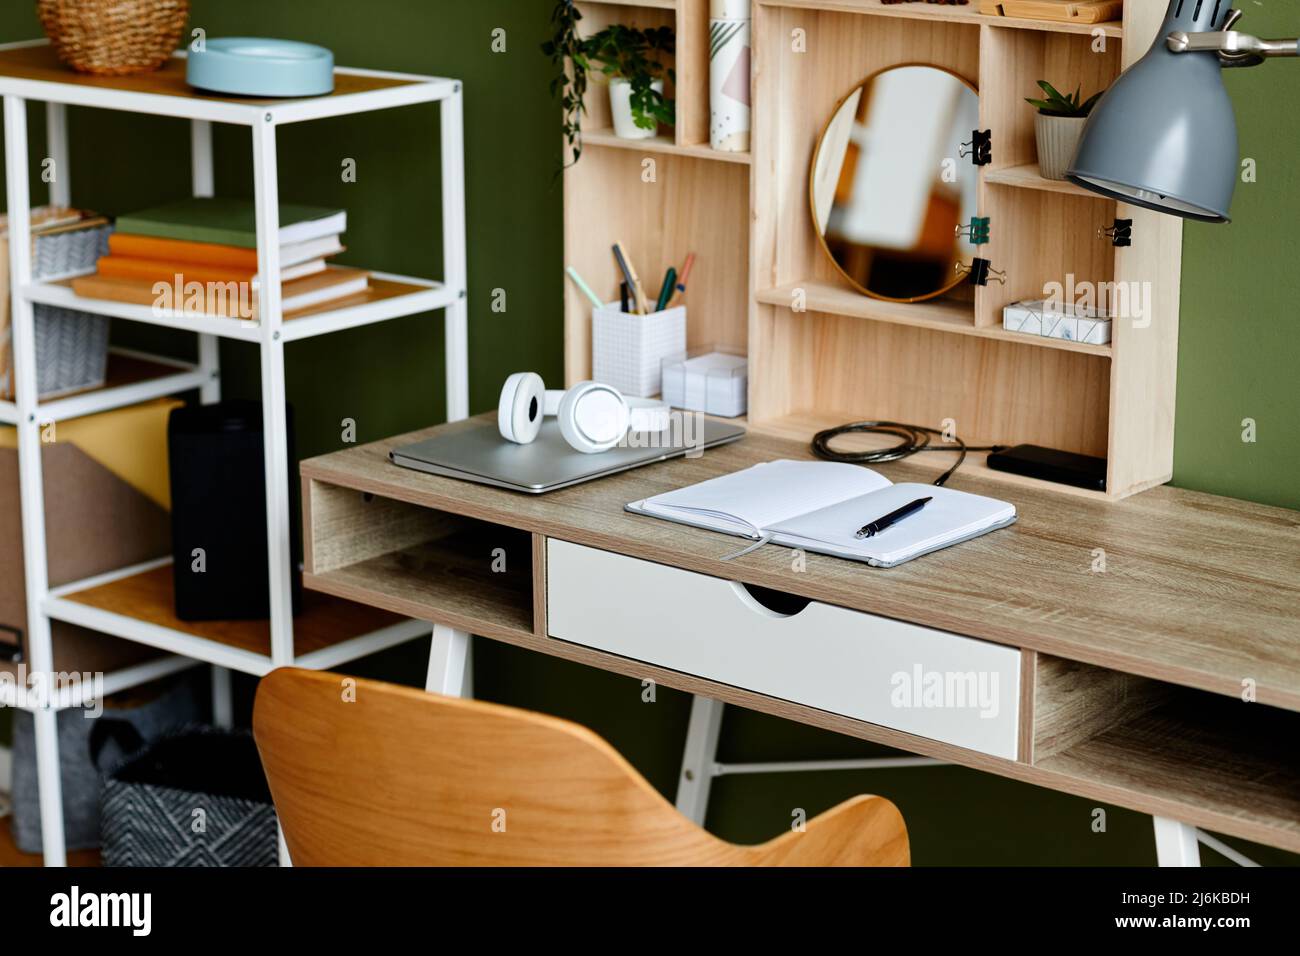 Immagine di sfondo di un ambiente di lavoro domestico occupato con tavolo in legno e notebook configurati per lo studio, spazio per la copia Foto Stock